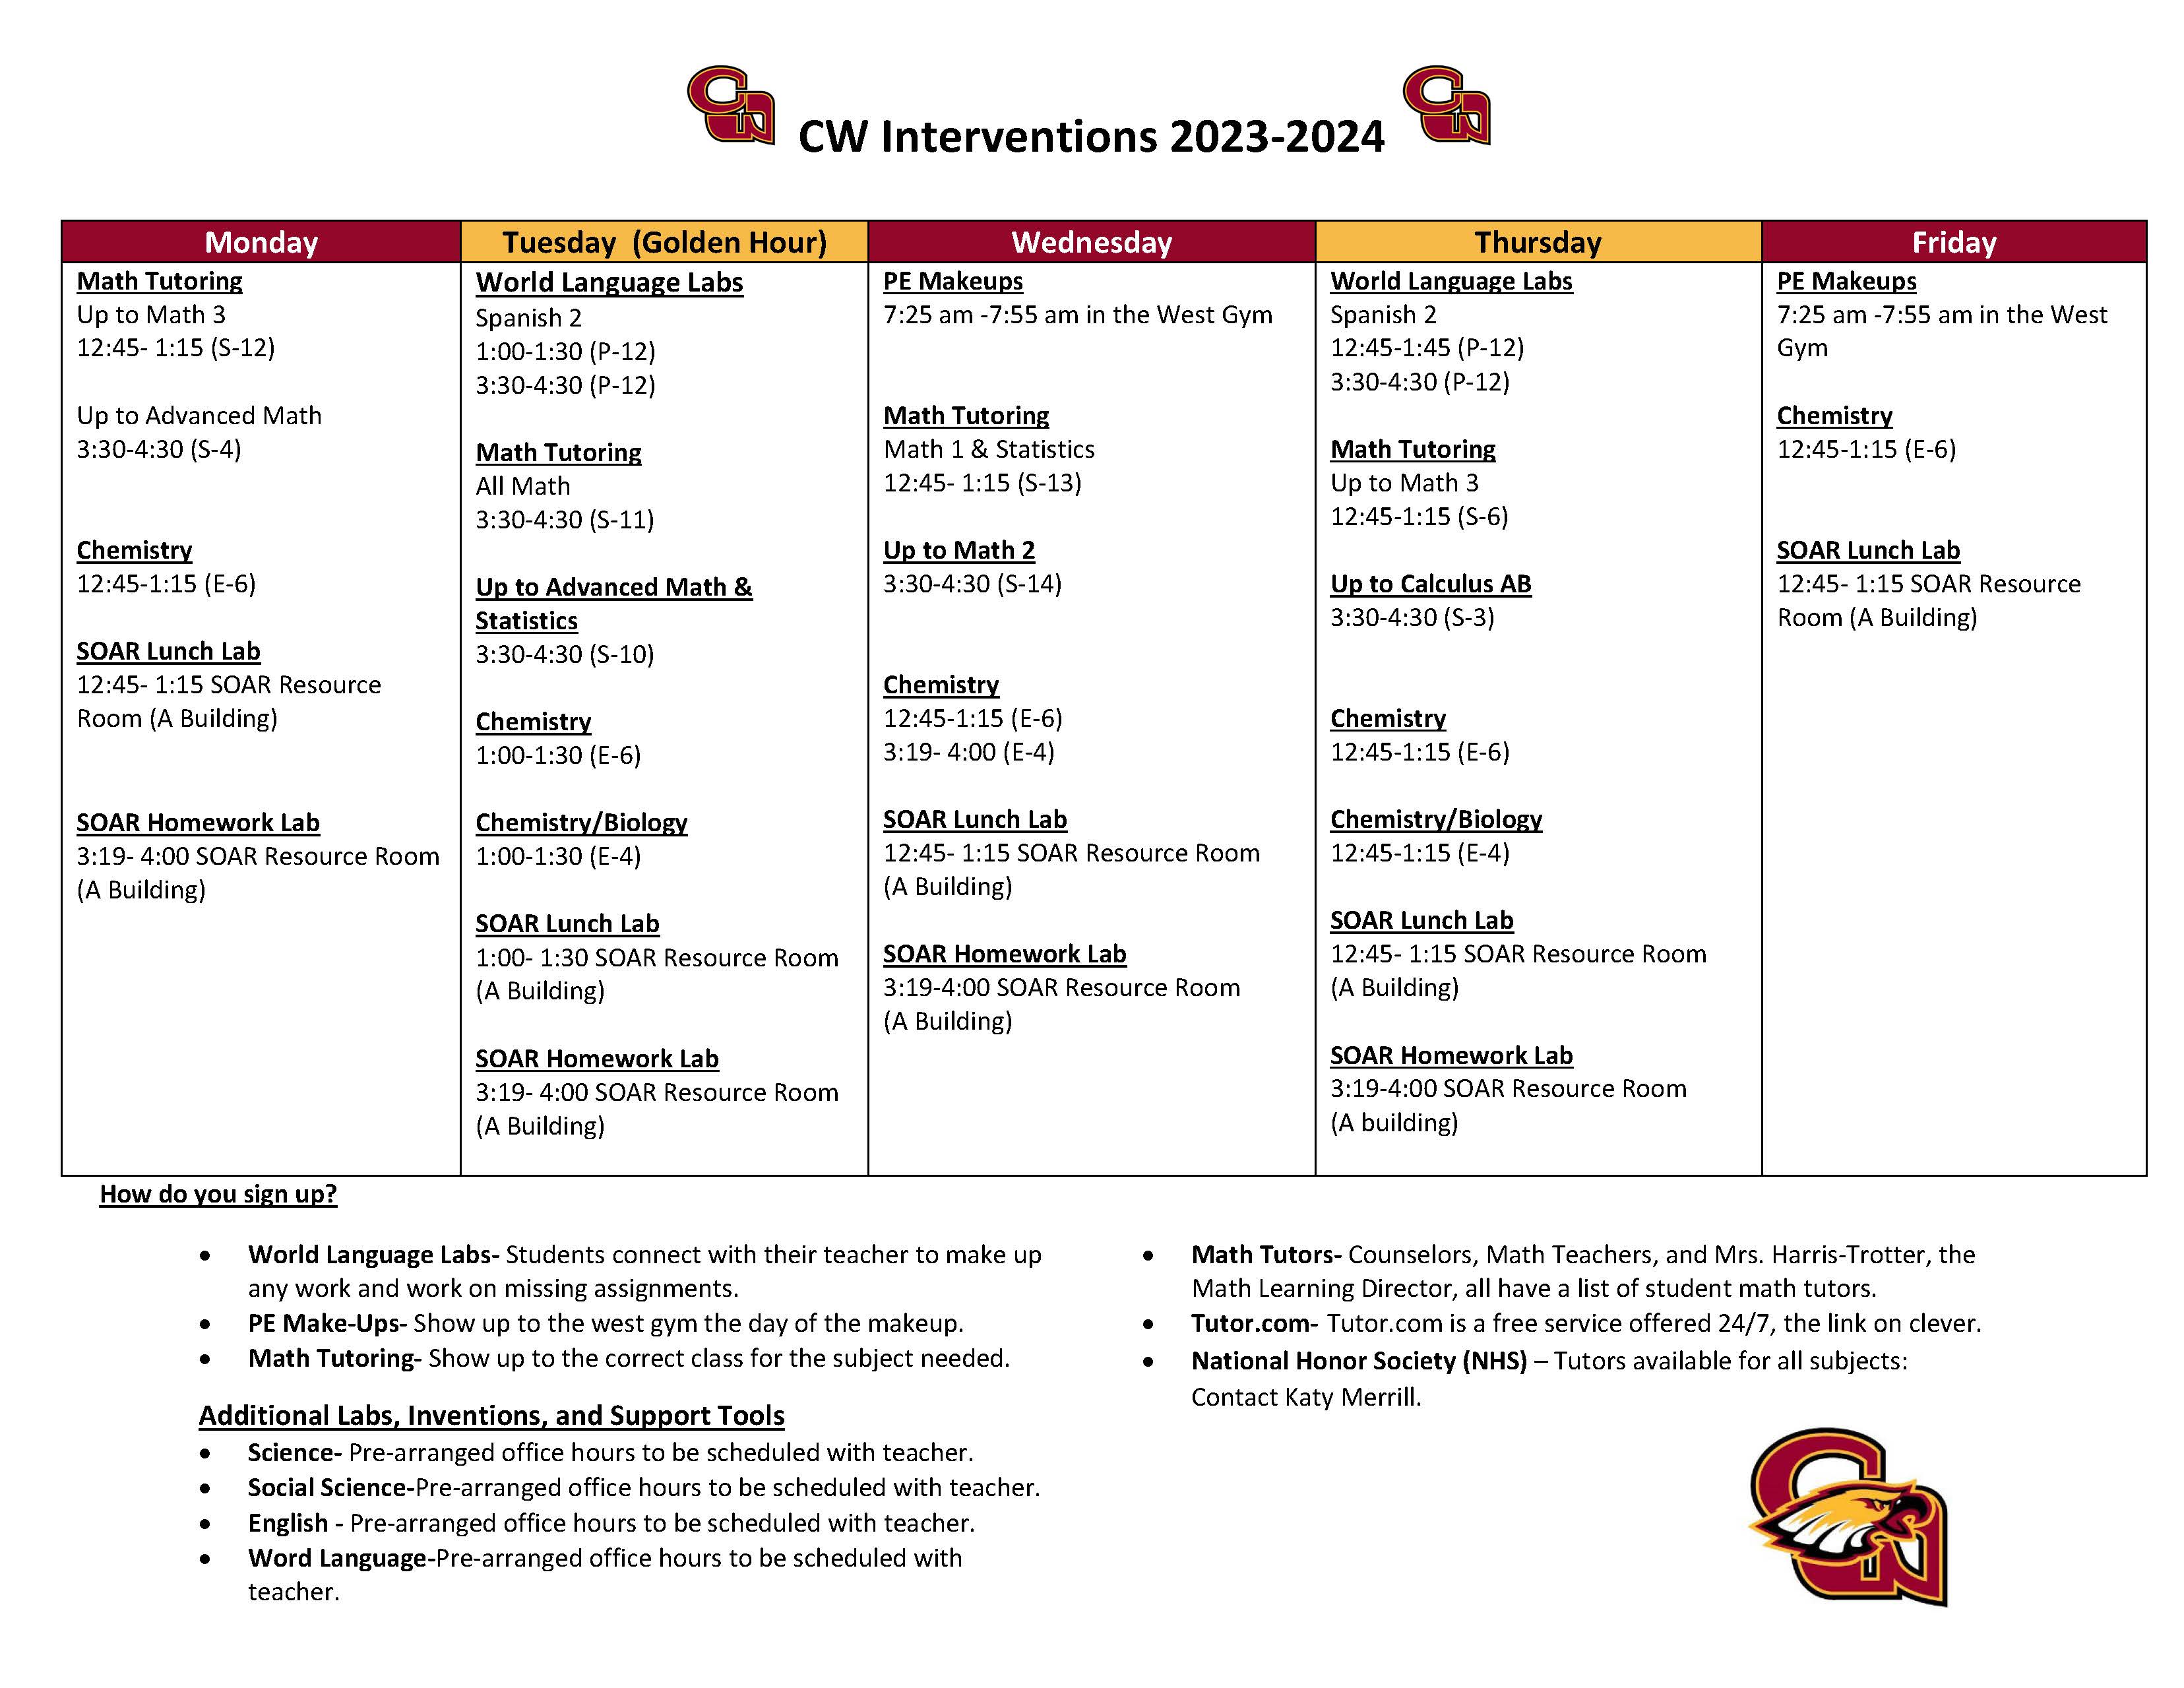 2023-2024 Intervention Schedule